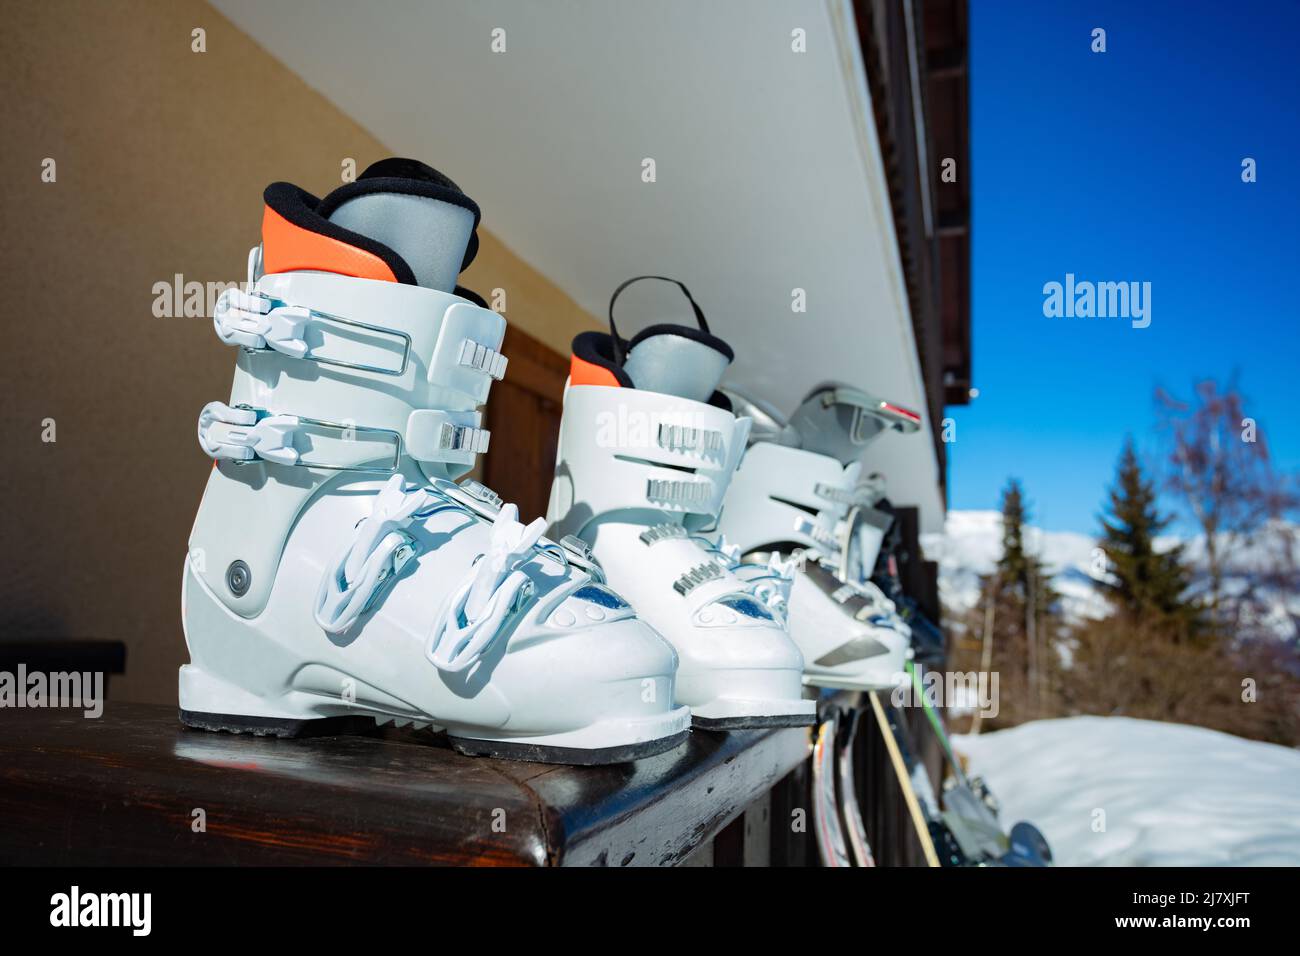 Row of many alpine ski boots on the balcony rail still Stock Photo